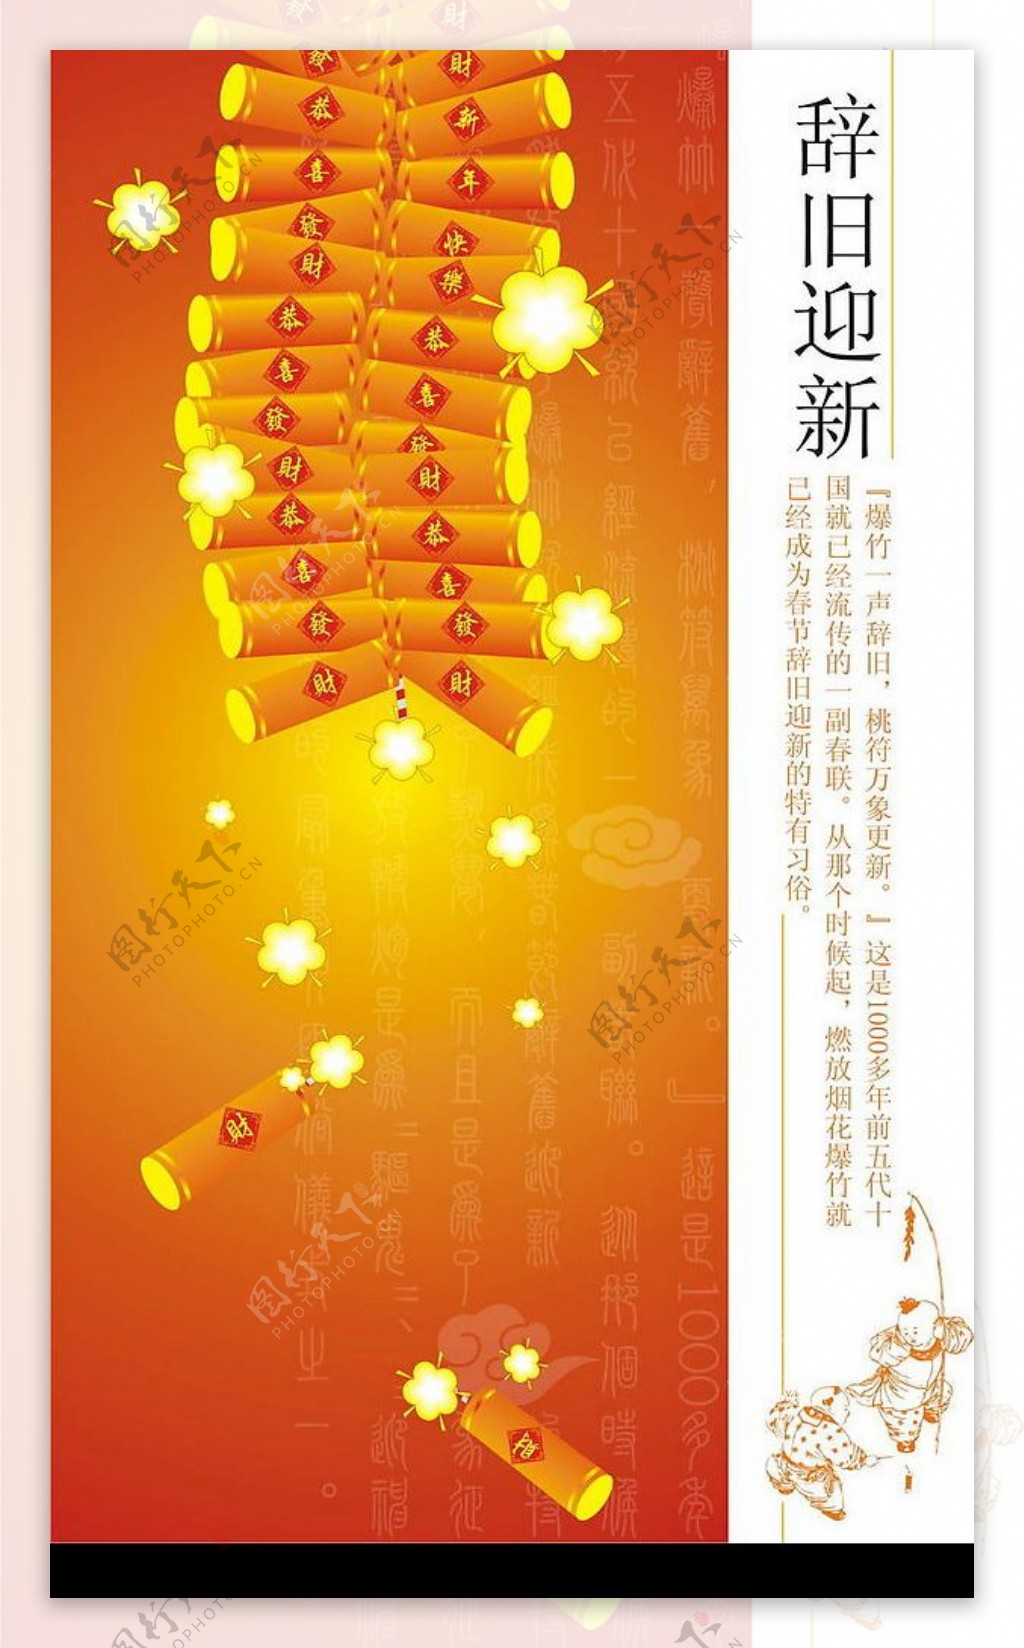 新年迎春中国节鞭炮灯笼图片